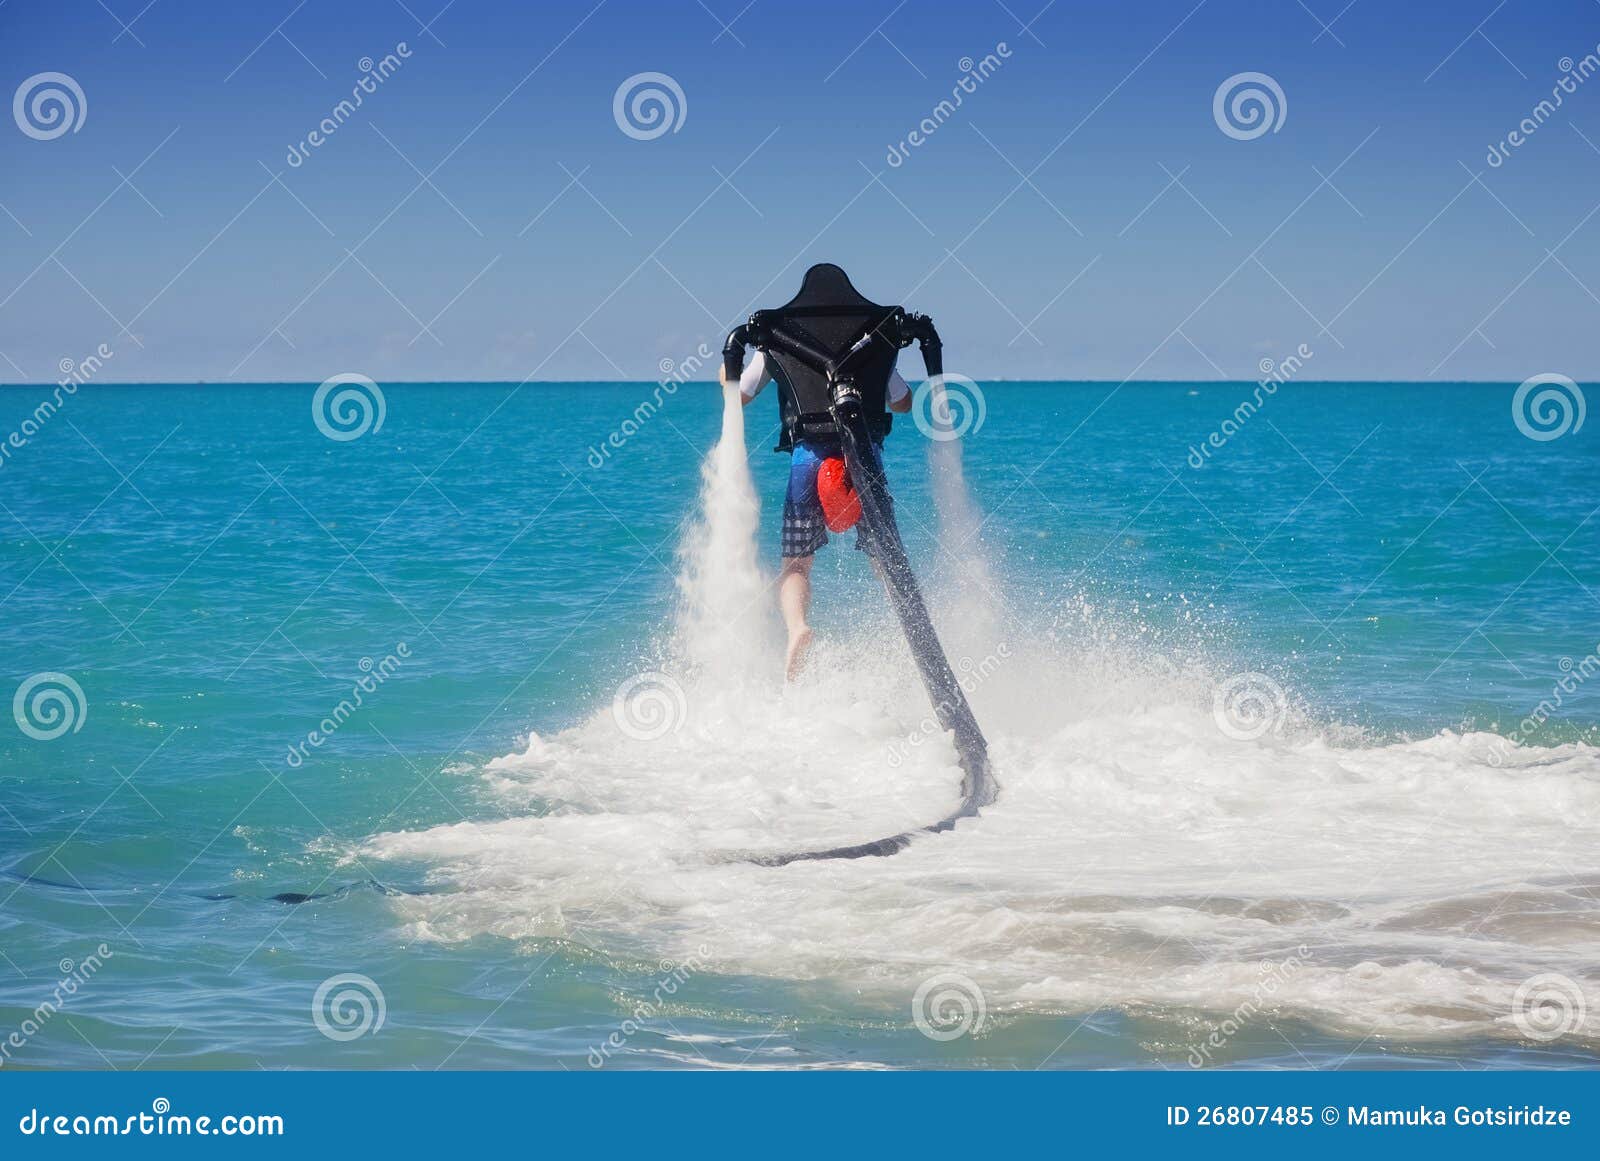 Deportes acuáticos. el hombre se eleva sobre el mar